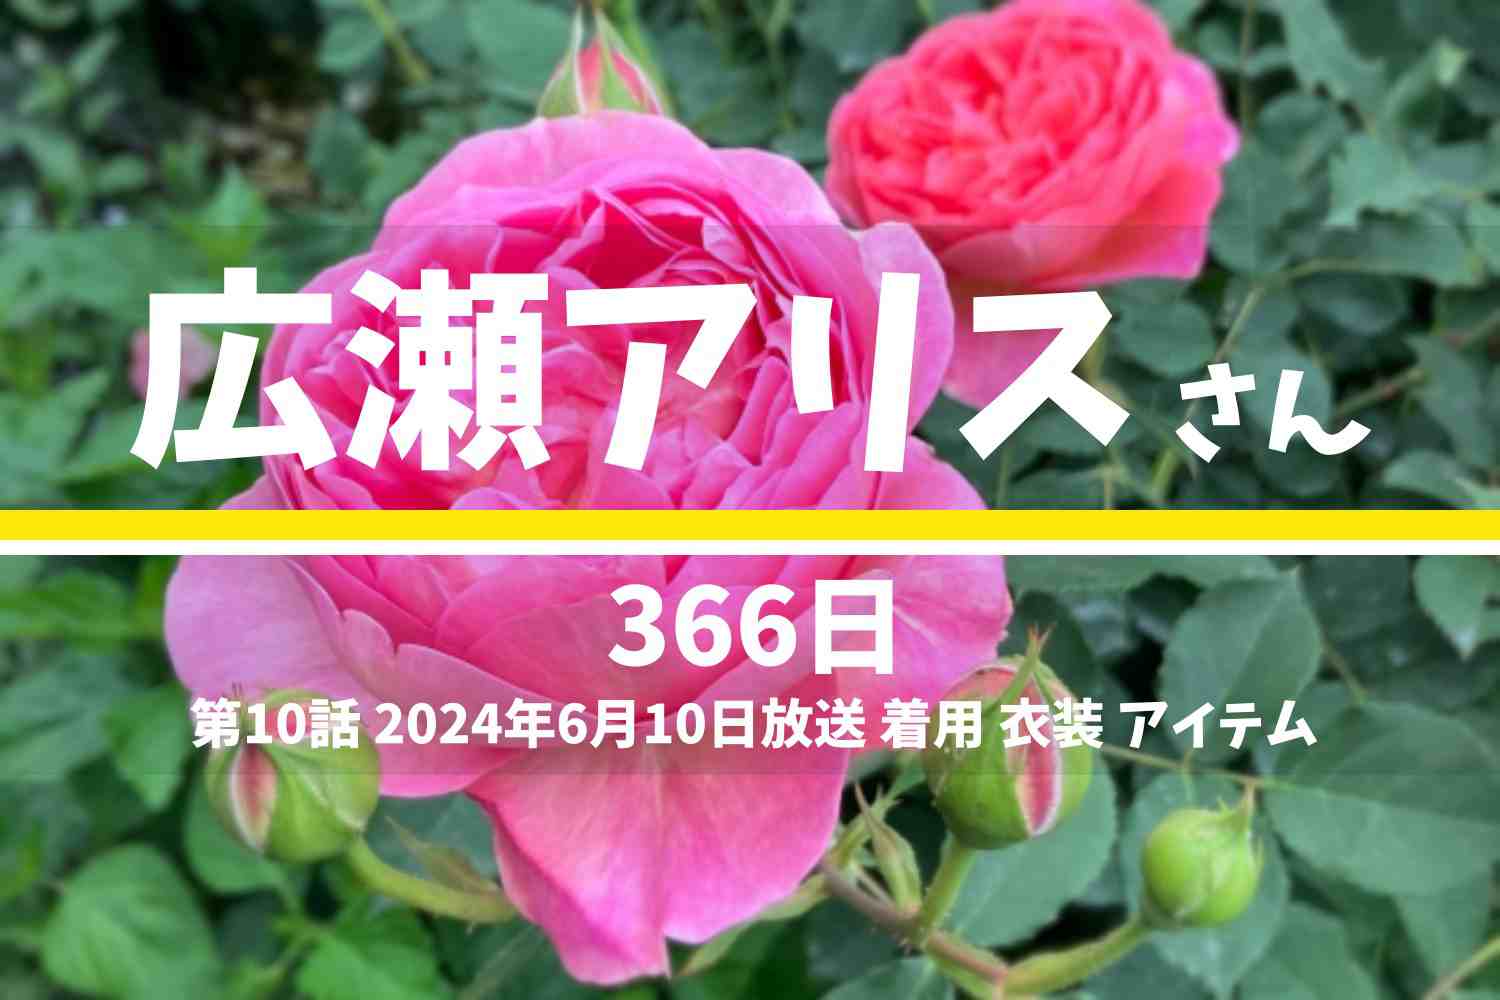 366日 広瀬アリスさん テレビドラマ 衣装 2024年6月10日放送